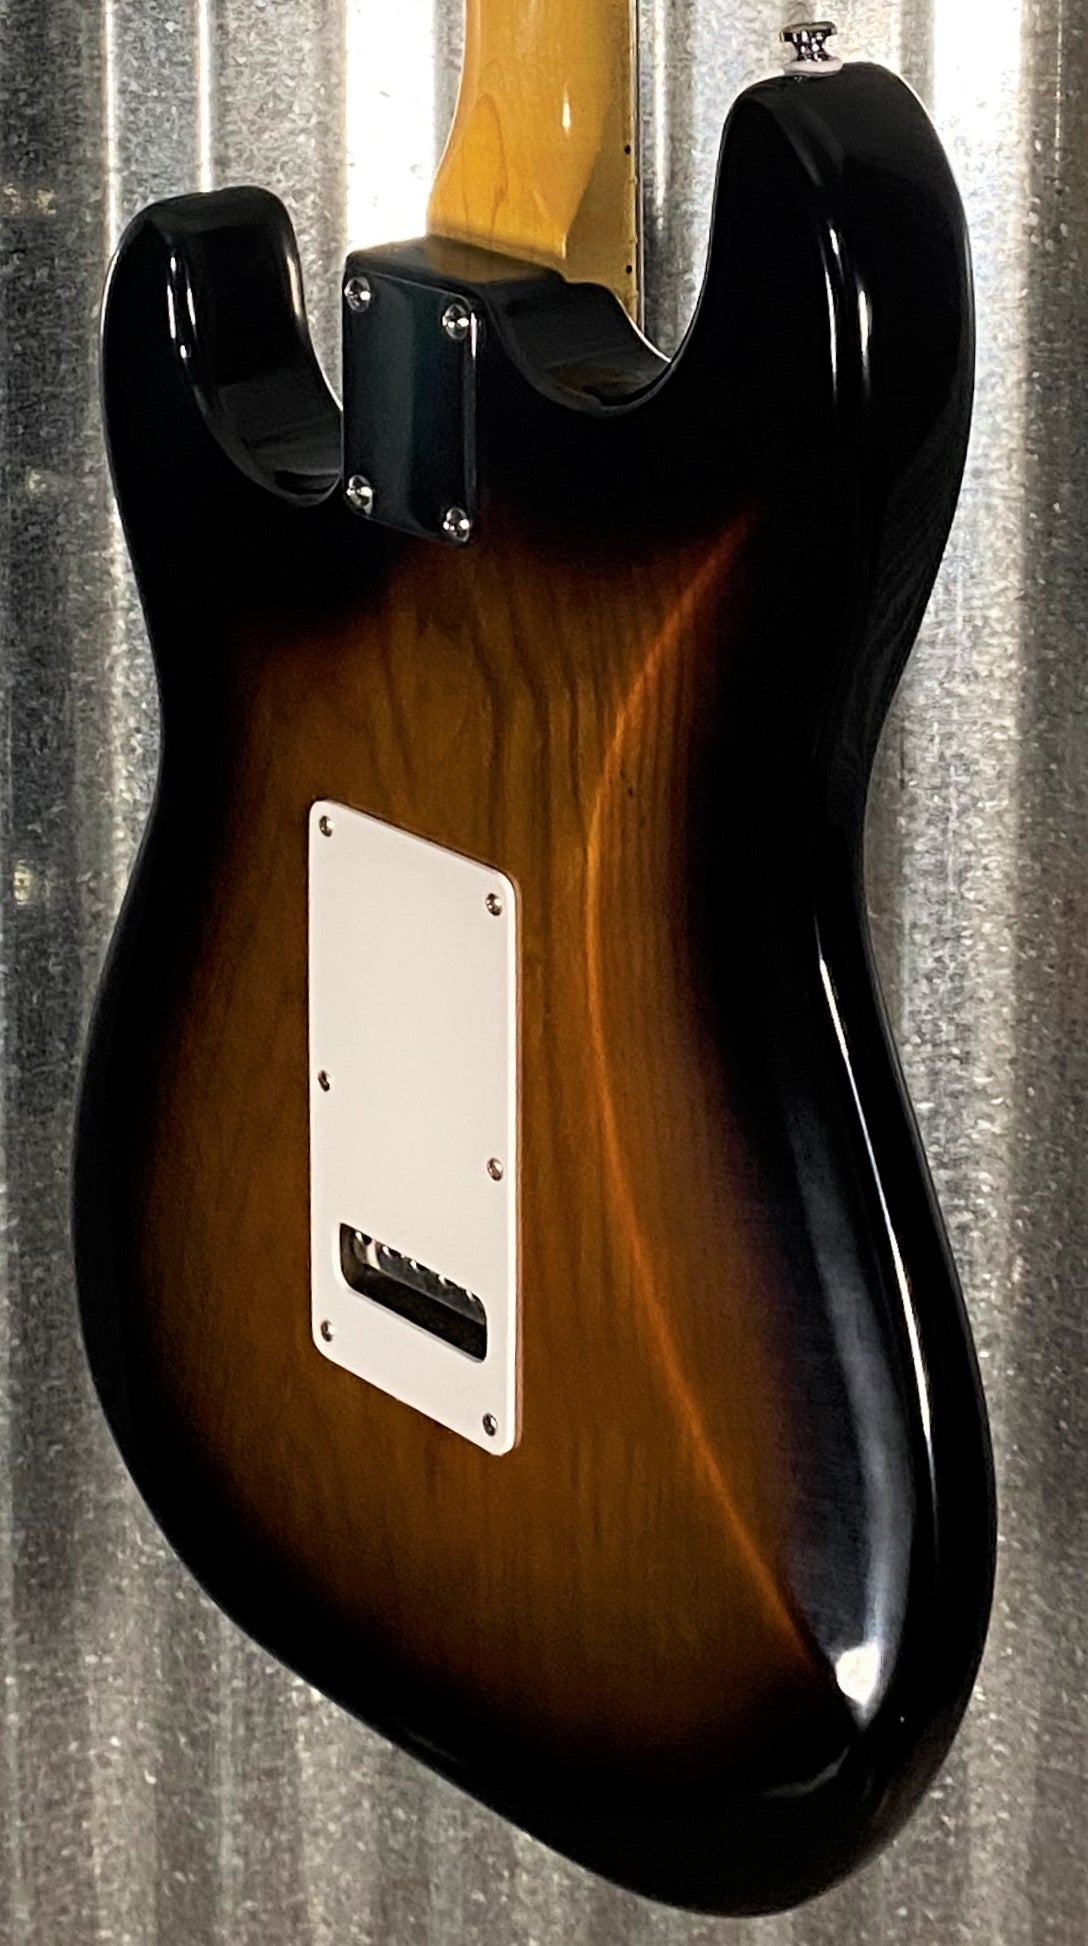 G&L Tribute Legacy HSS 3-Tone Sunburst Guitar #9750 Used